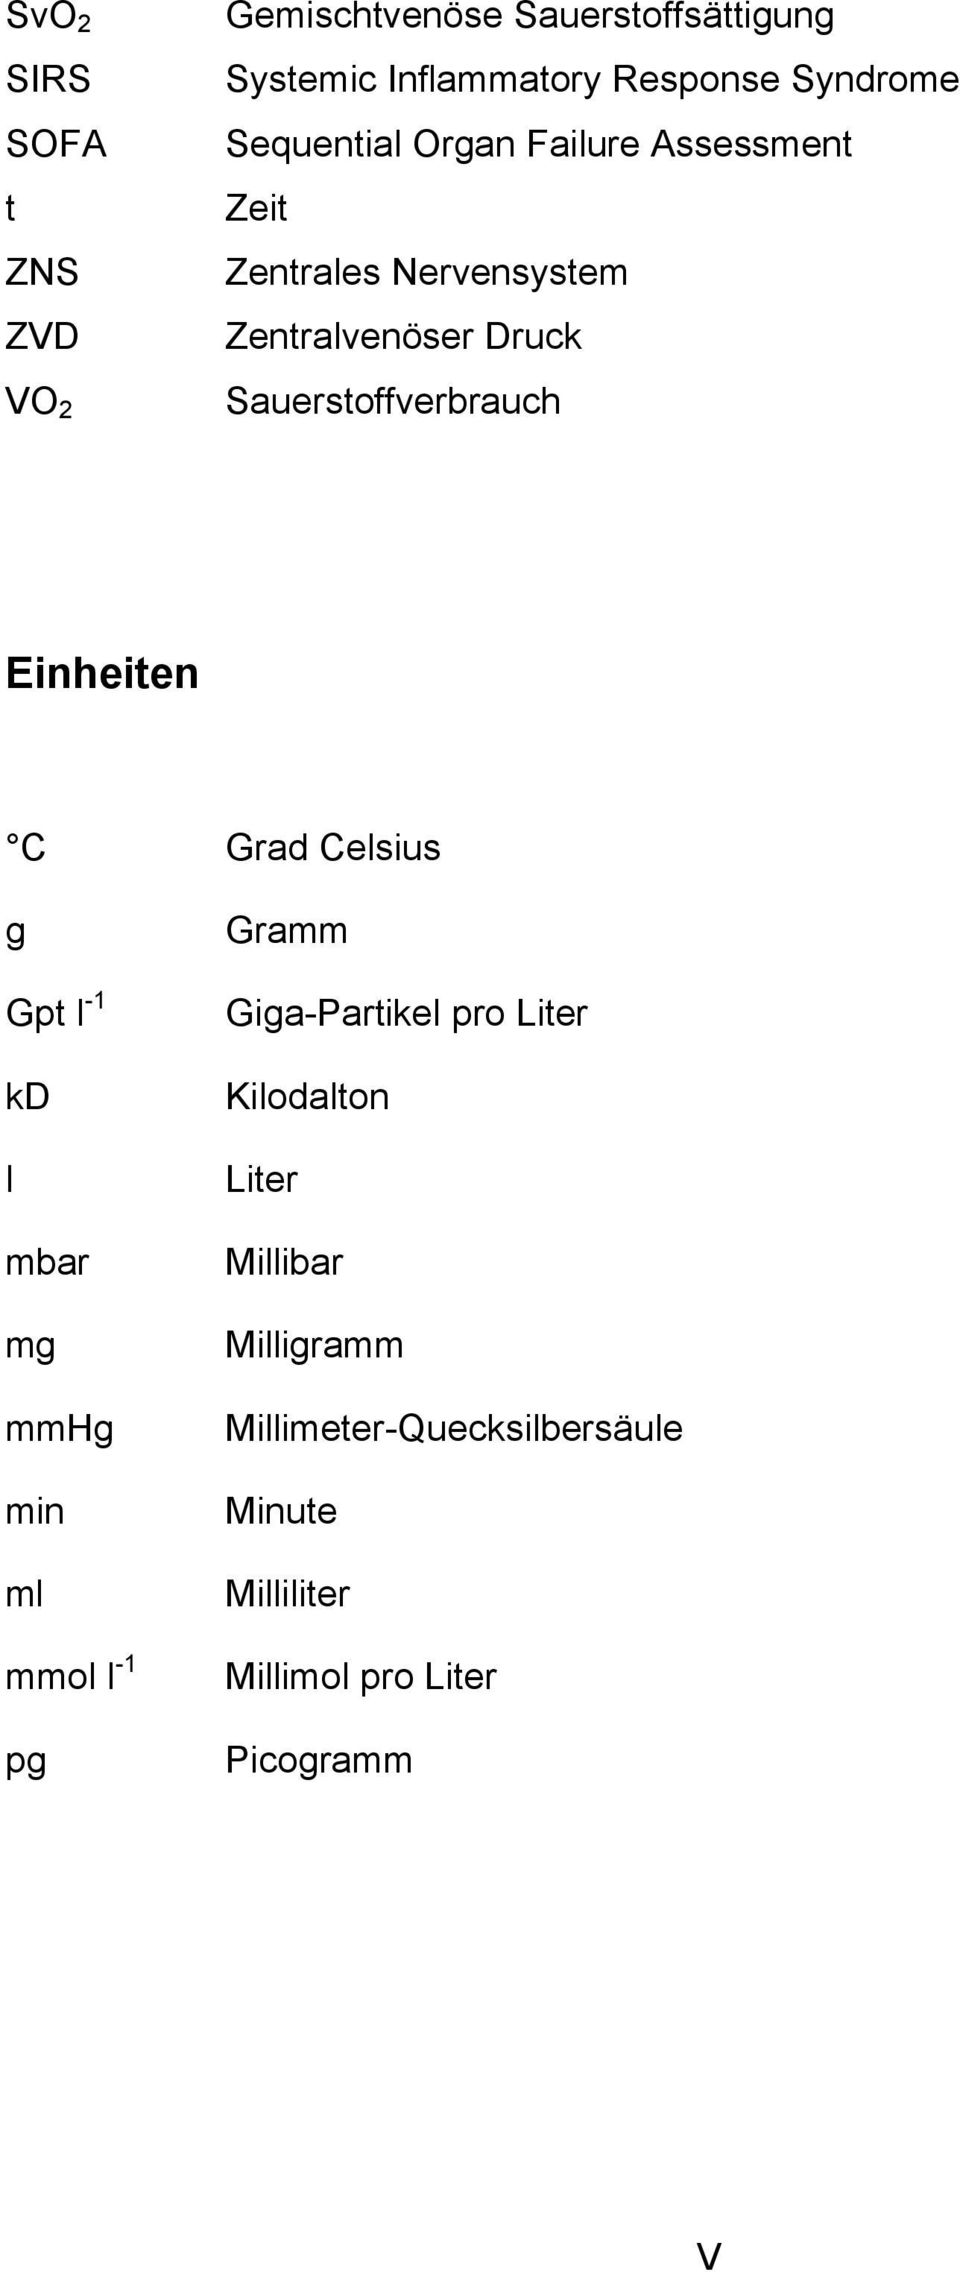 Einheiten C Grad Celsius g Gpt l -1 kd l mbar mg mmhg min ml mmol l -1 pg Gramm Giga-Partikel pro Liter